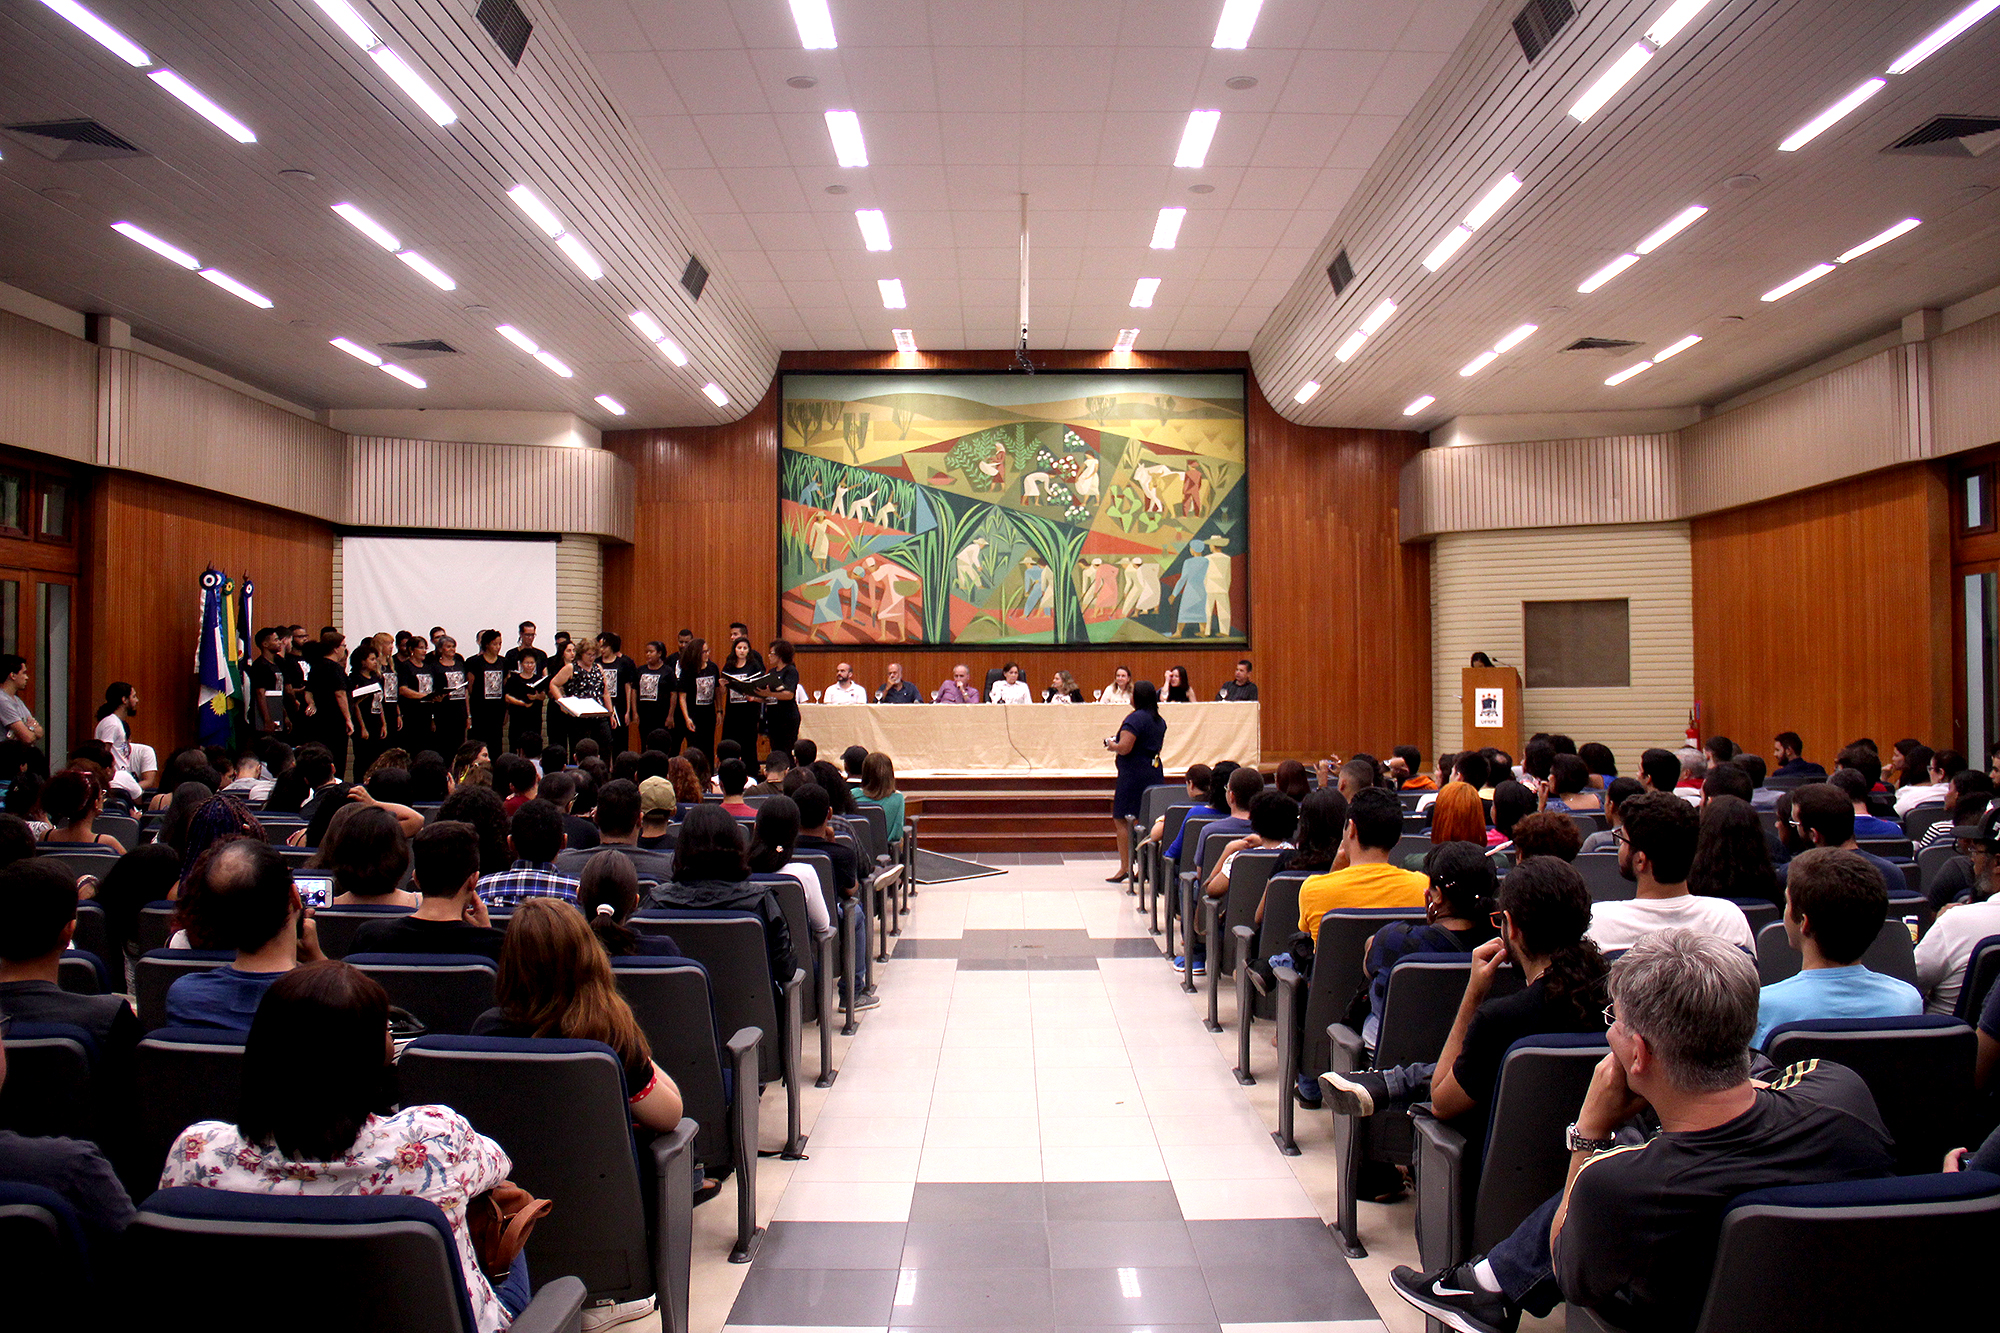 Imagem da solenidade da Aula Inaugural, no Salão Nobre da UFRPE, estudantes sentados nas cadeiras no primeiro plano, mesa de autoridades ao fundo.